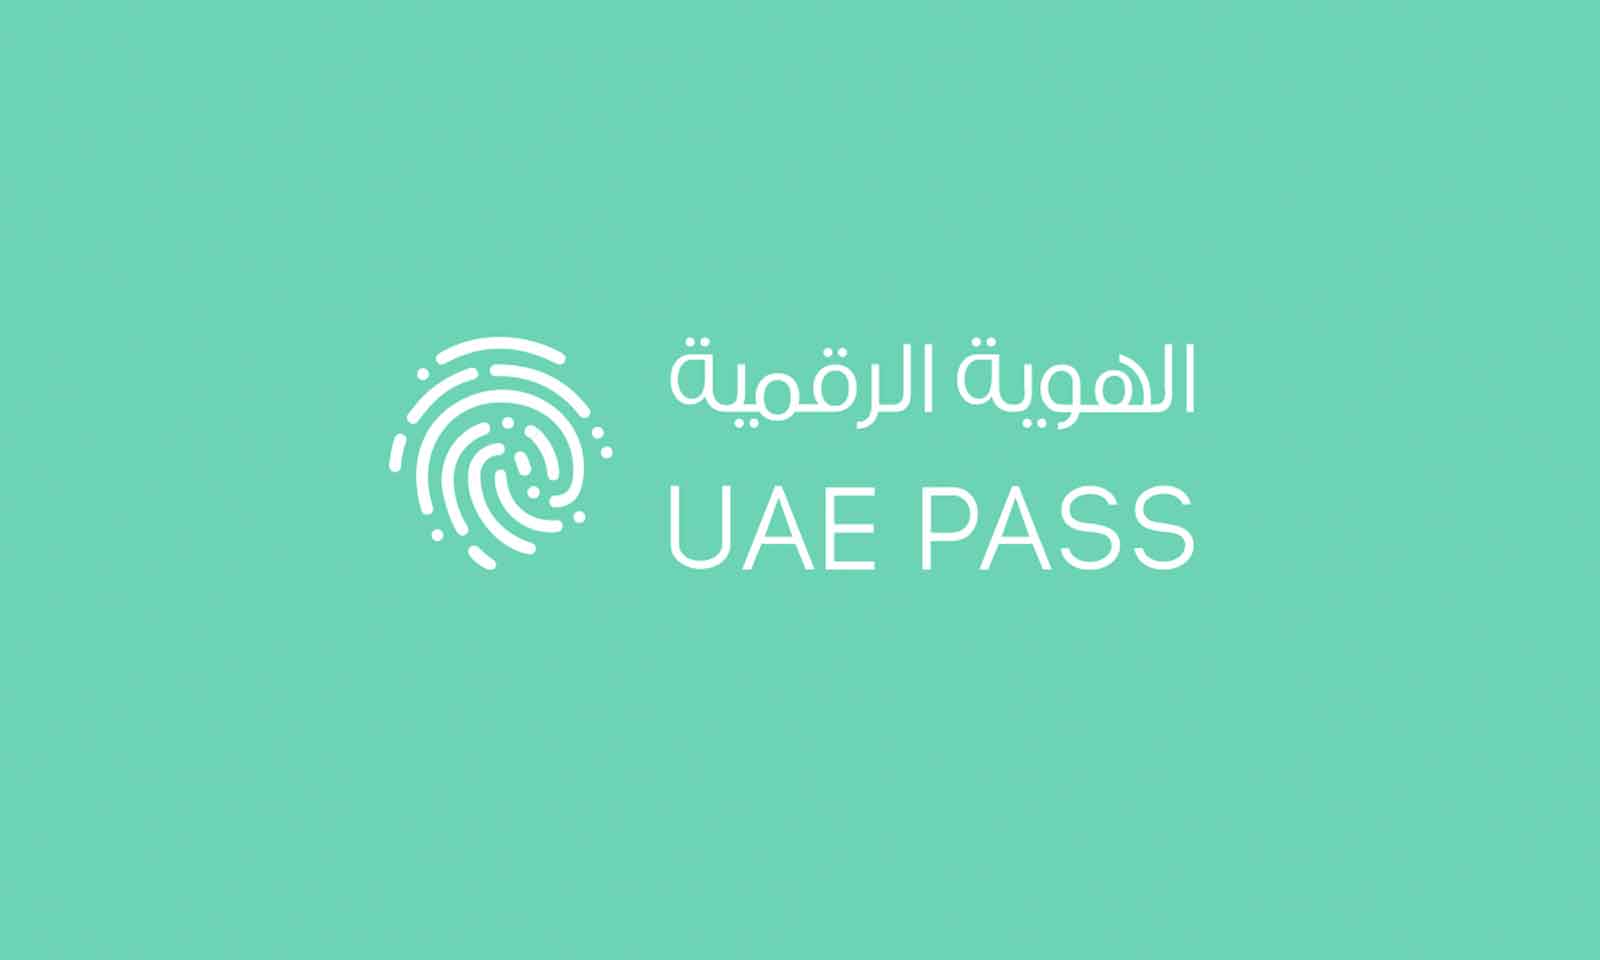 UAE-pass-main1-1600